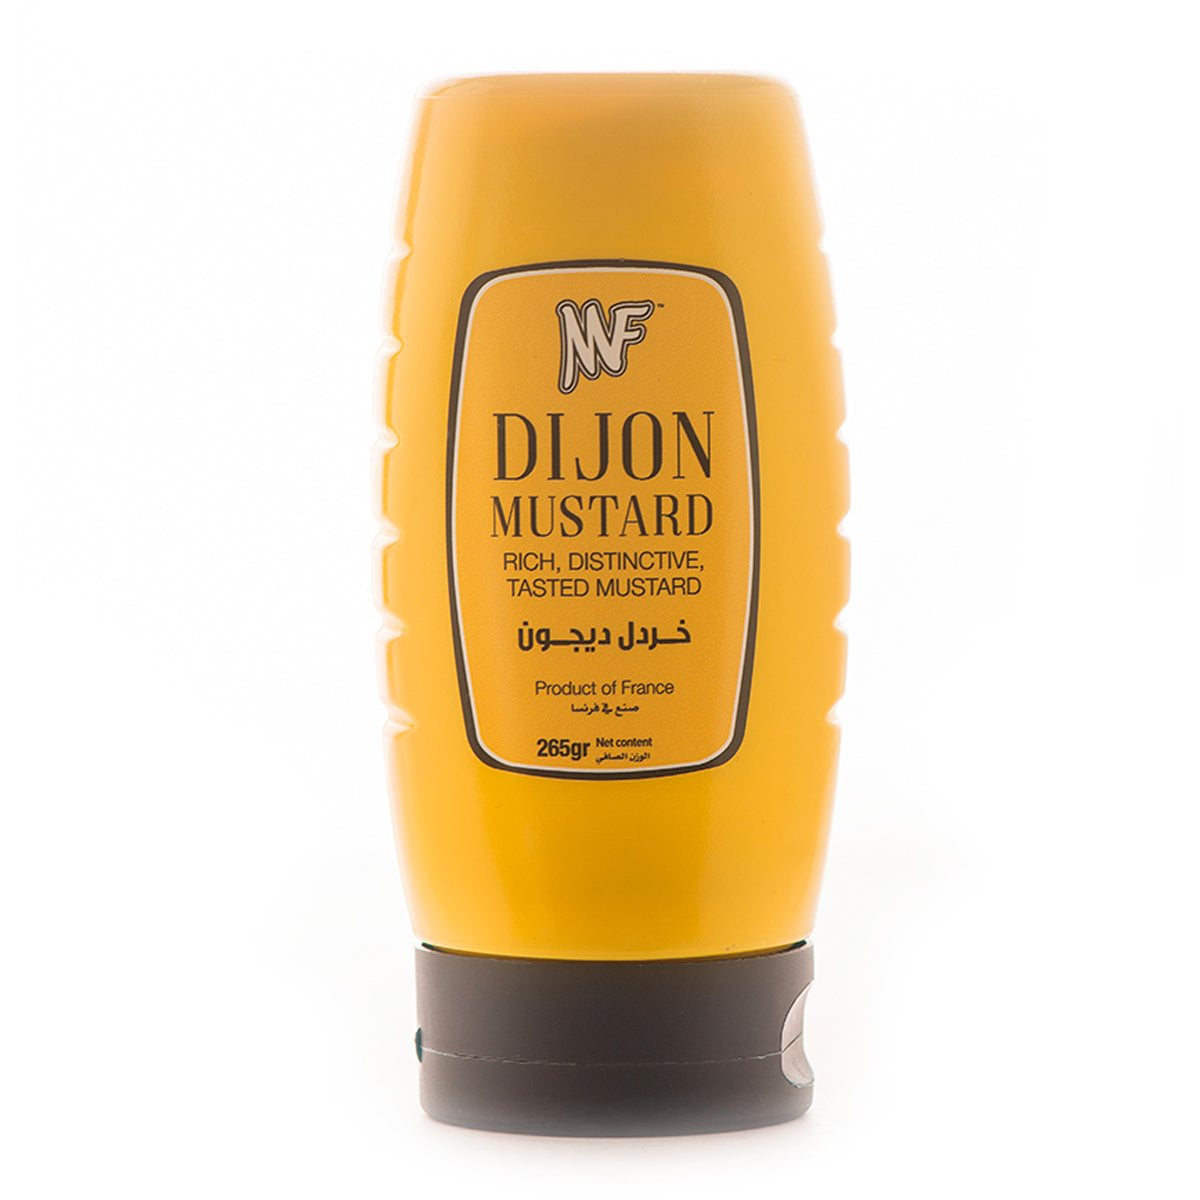 MF Dijon Mustard 265g